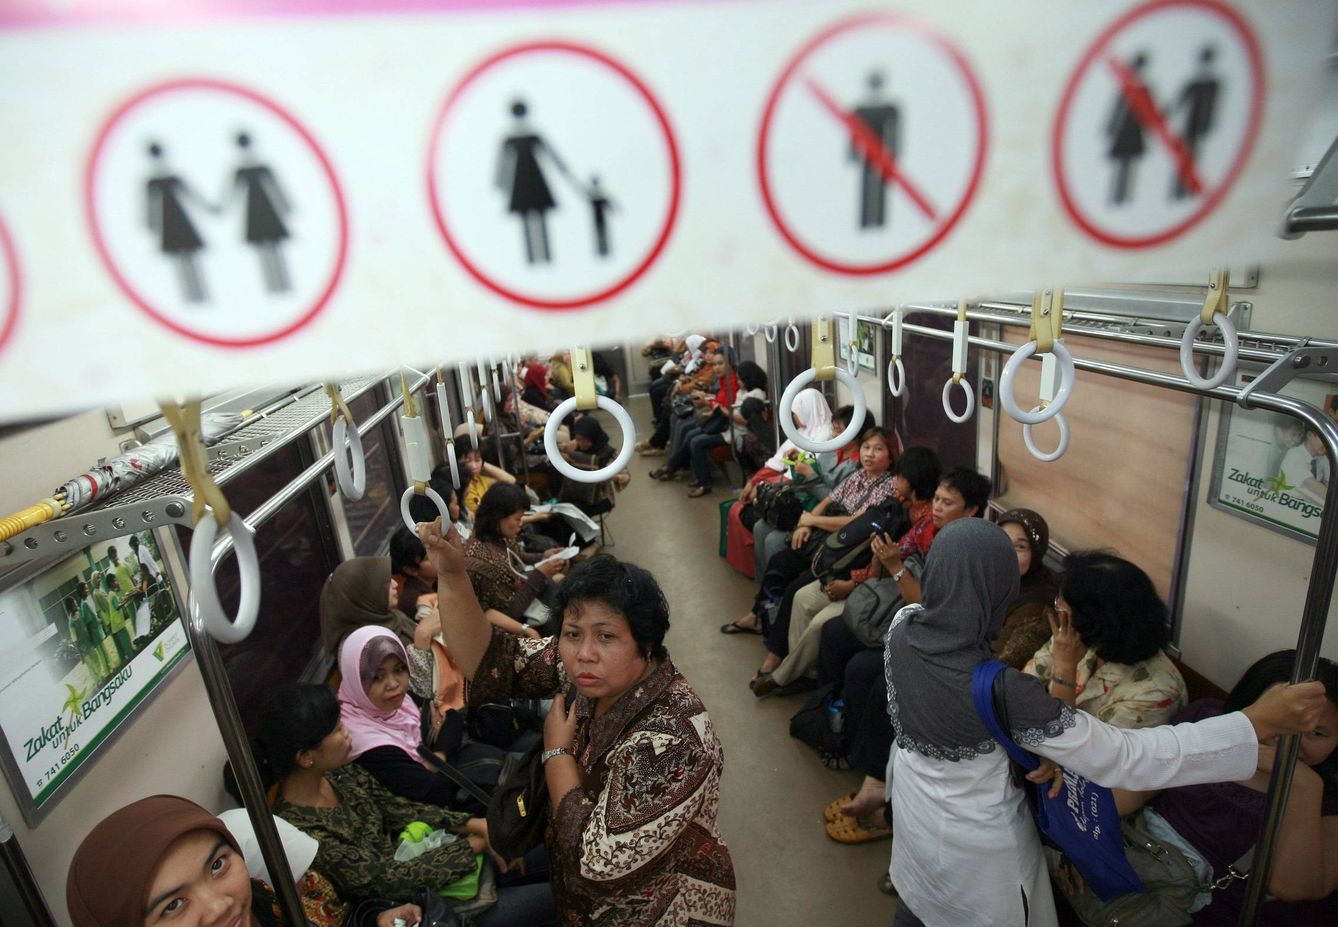 Varios países han añadido a sus trenes vagones exclusivos para mujeres. (EFE)